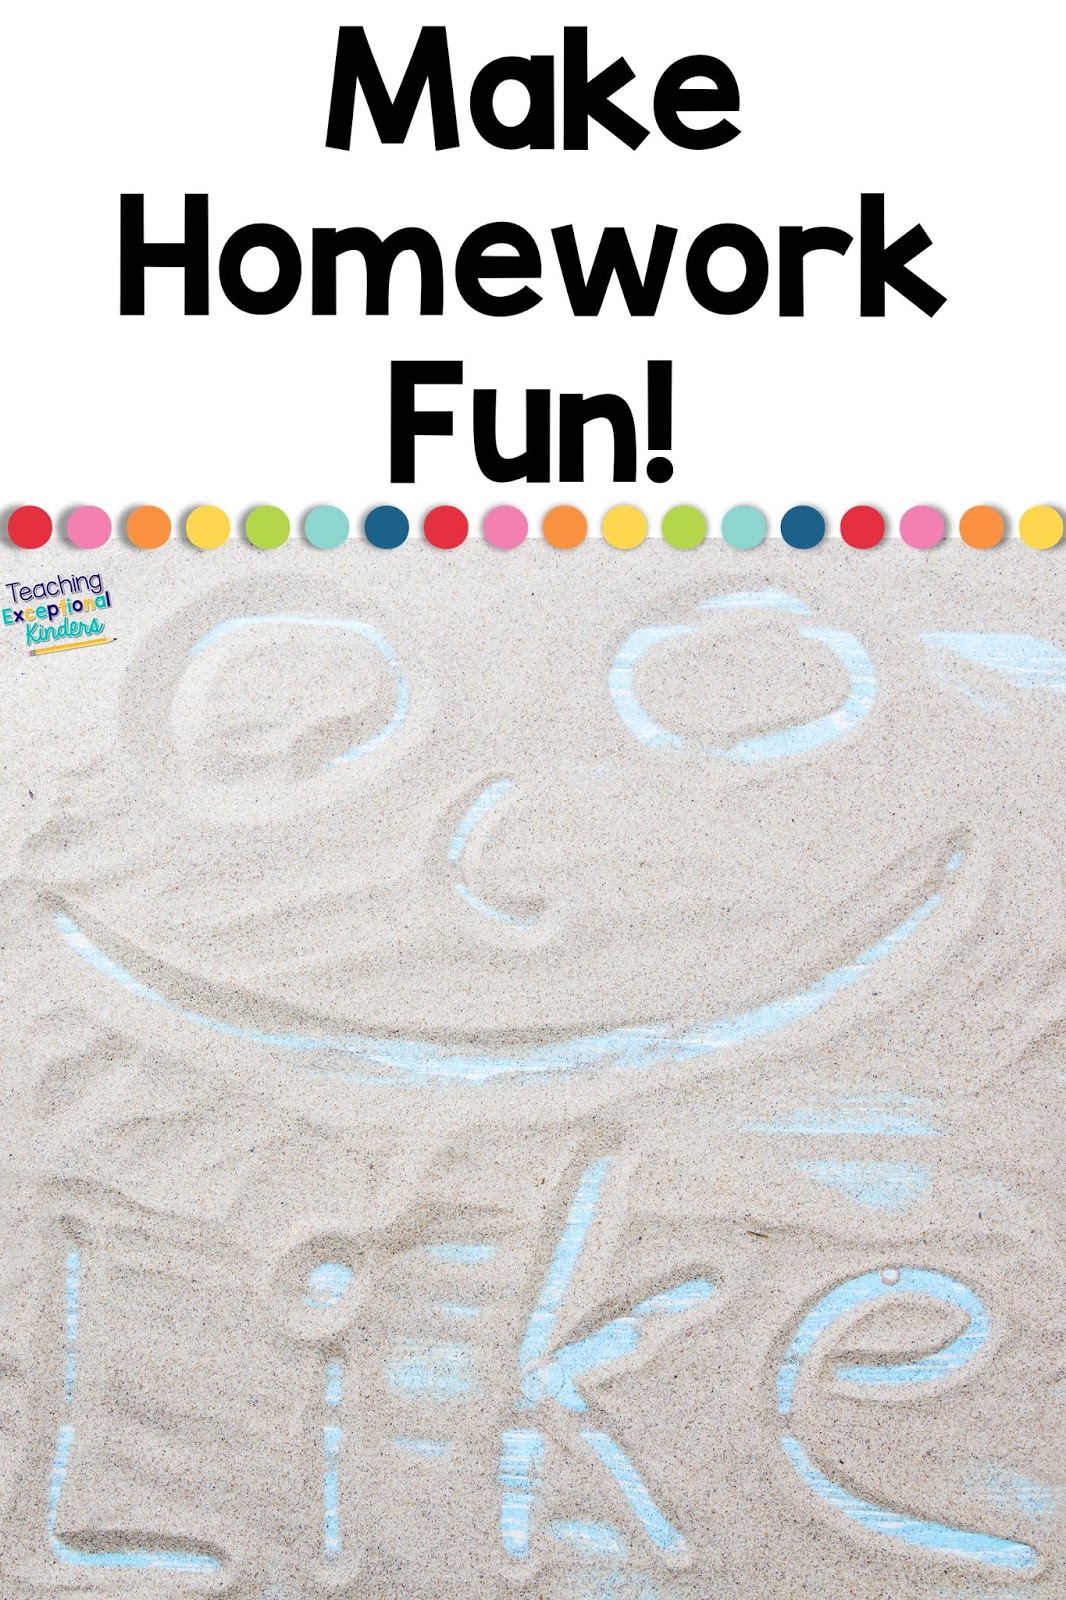 kindergarten students homework